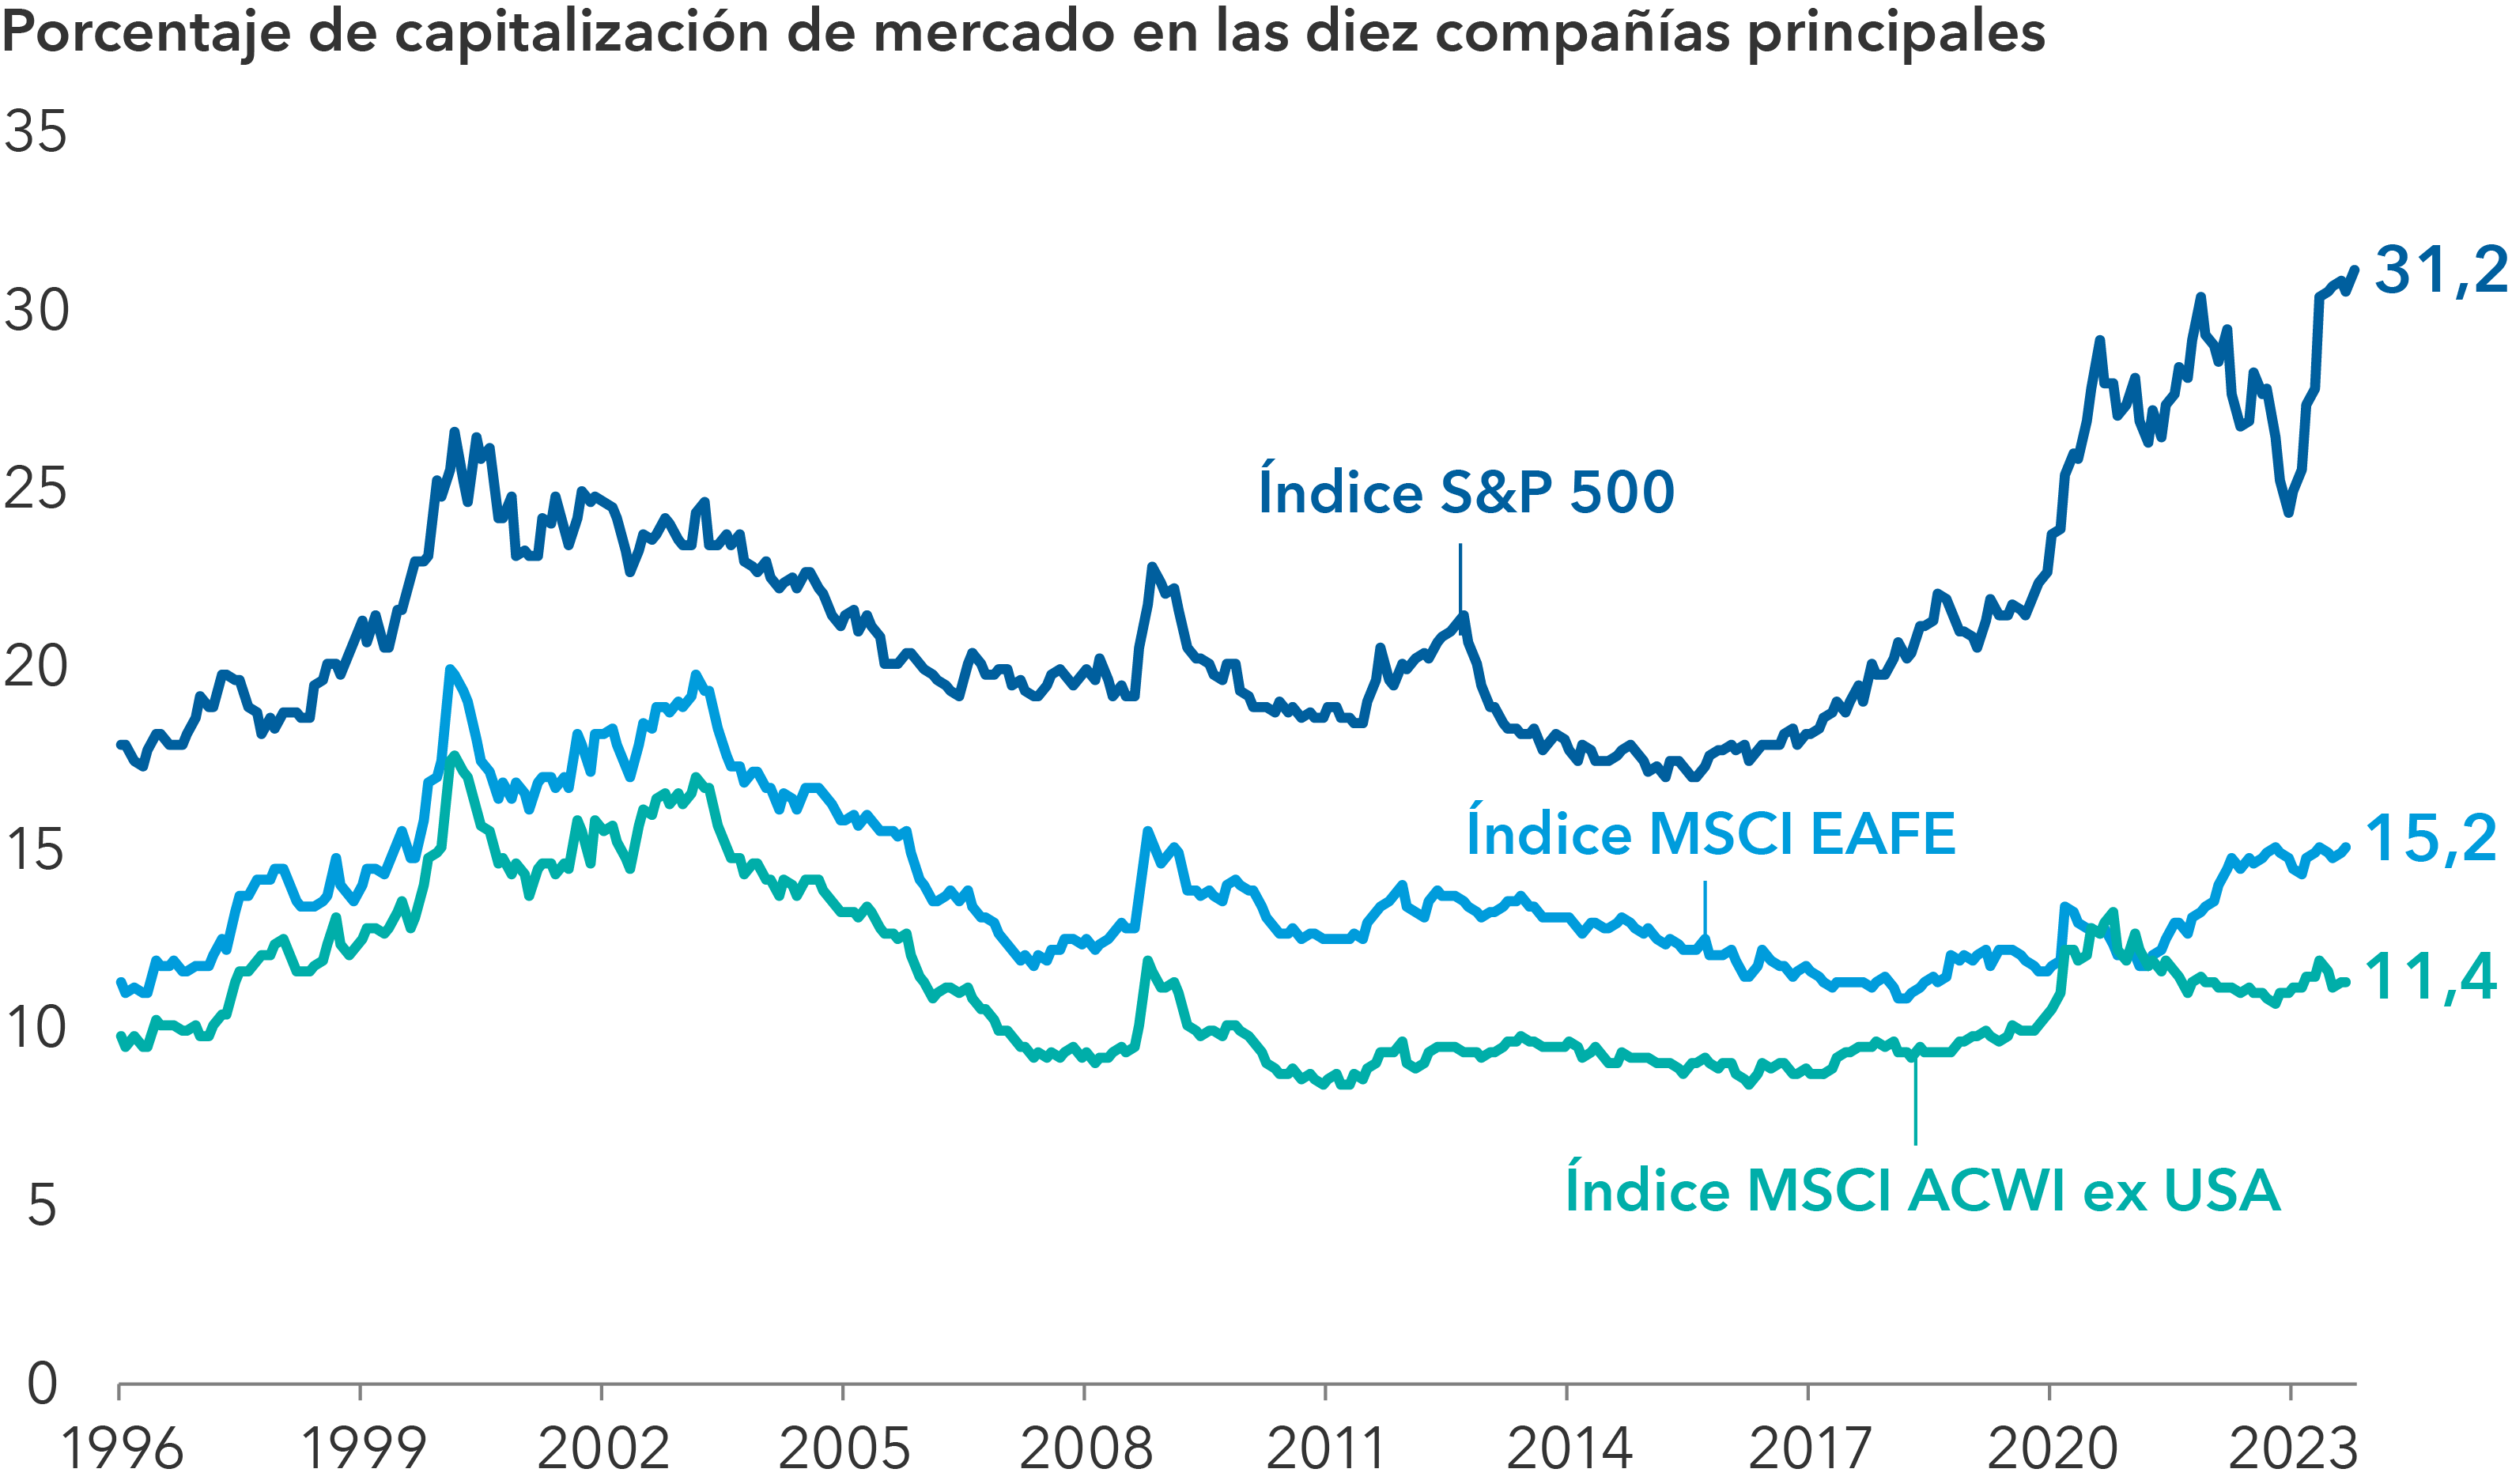 La imagen muestra un gráfico lineal que refleja la ponderación de las diez mayores compañías desde 1996 hasta octubre de 2023 en tres índices de renta variable: el índice S&P 500, el MSCI EAFE y el MSCI ACWI ex USA. A 31 octubre 2023, las ponderaciones eran las siguientes: 31,2% en el caso del índice S&P 500; 15,2% para el MSCI EAFE y 11,4% del MSCI ACWI ex USA.